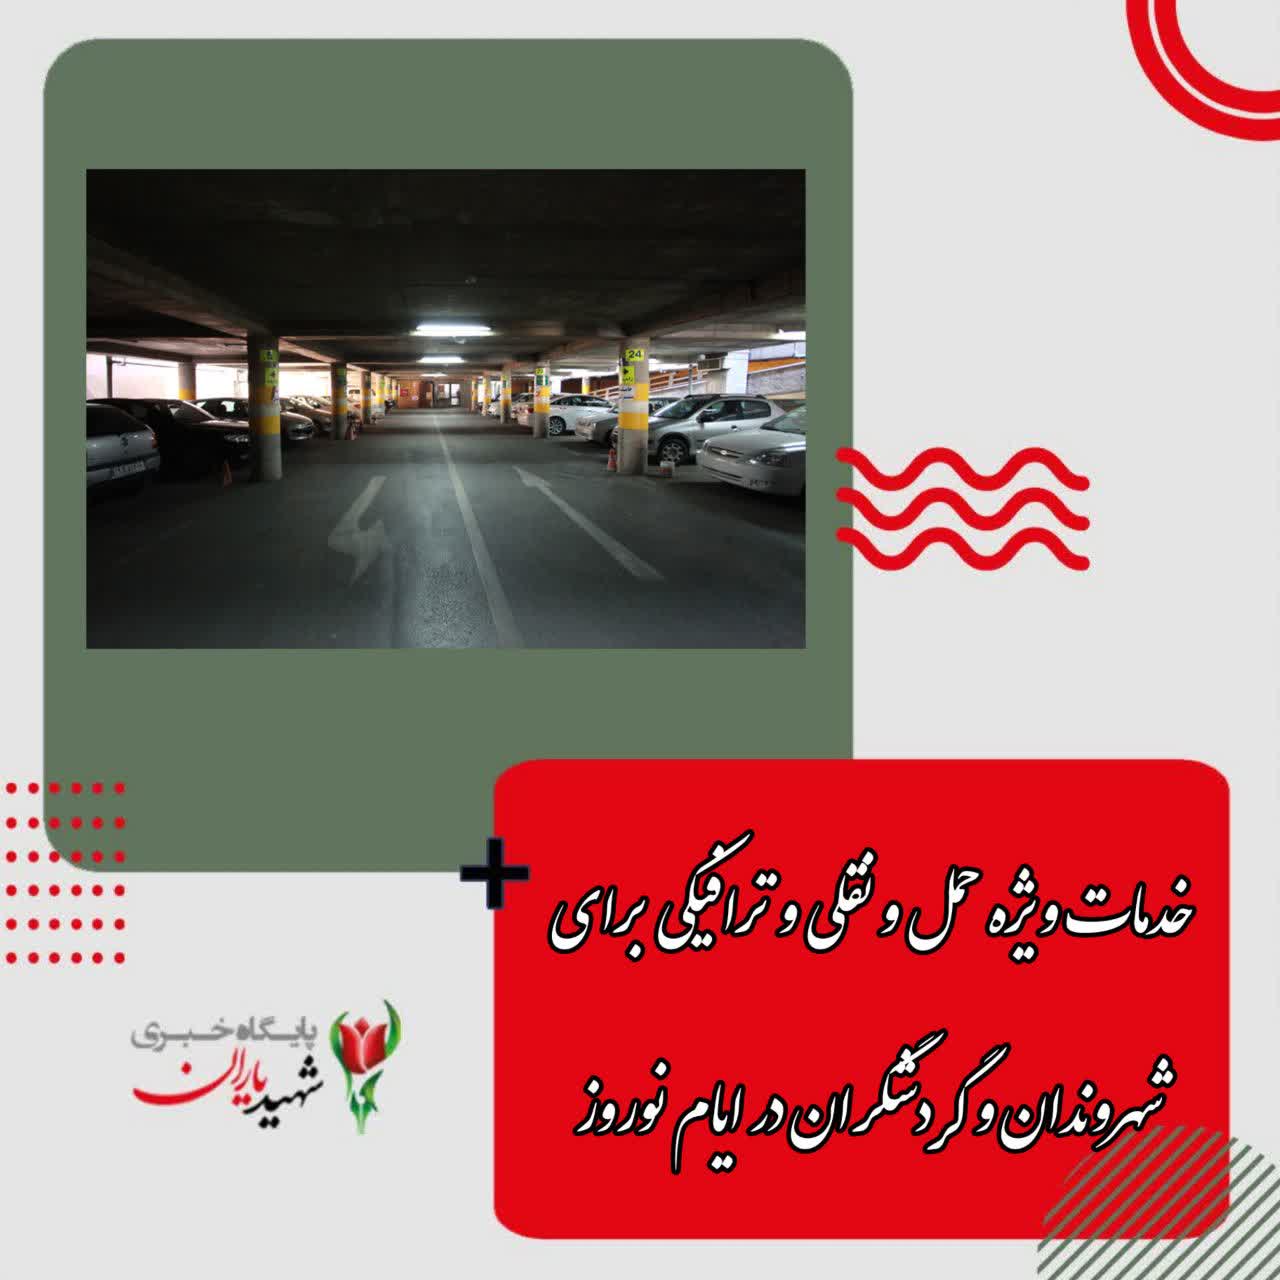 معاون حمل و نقل و ترافیک شهرداری اصفهان خبر داد: